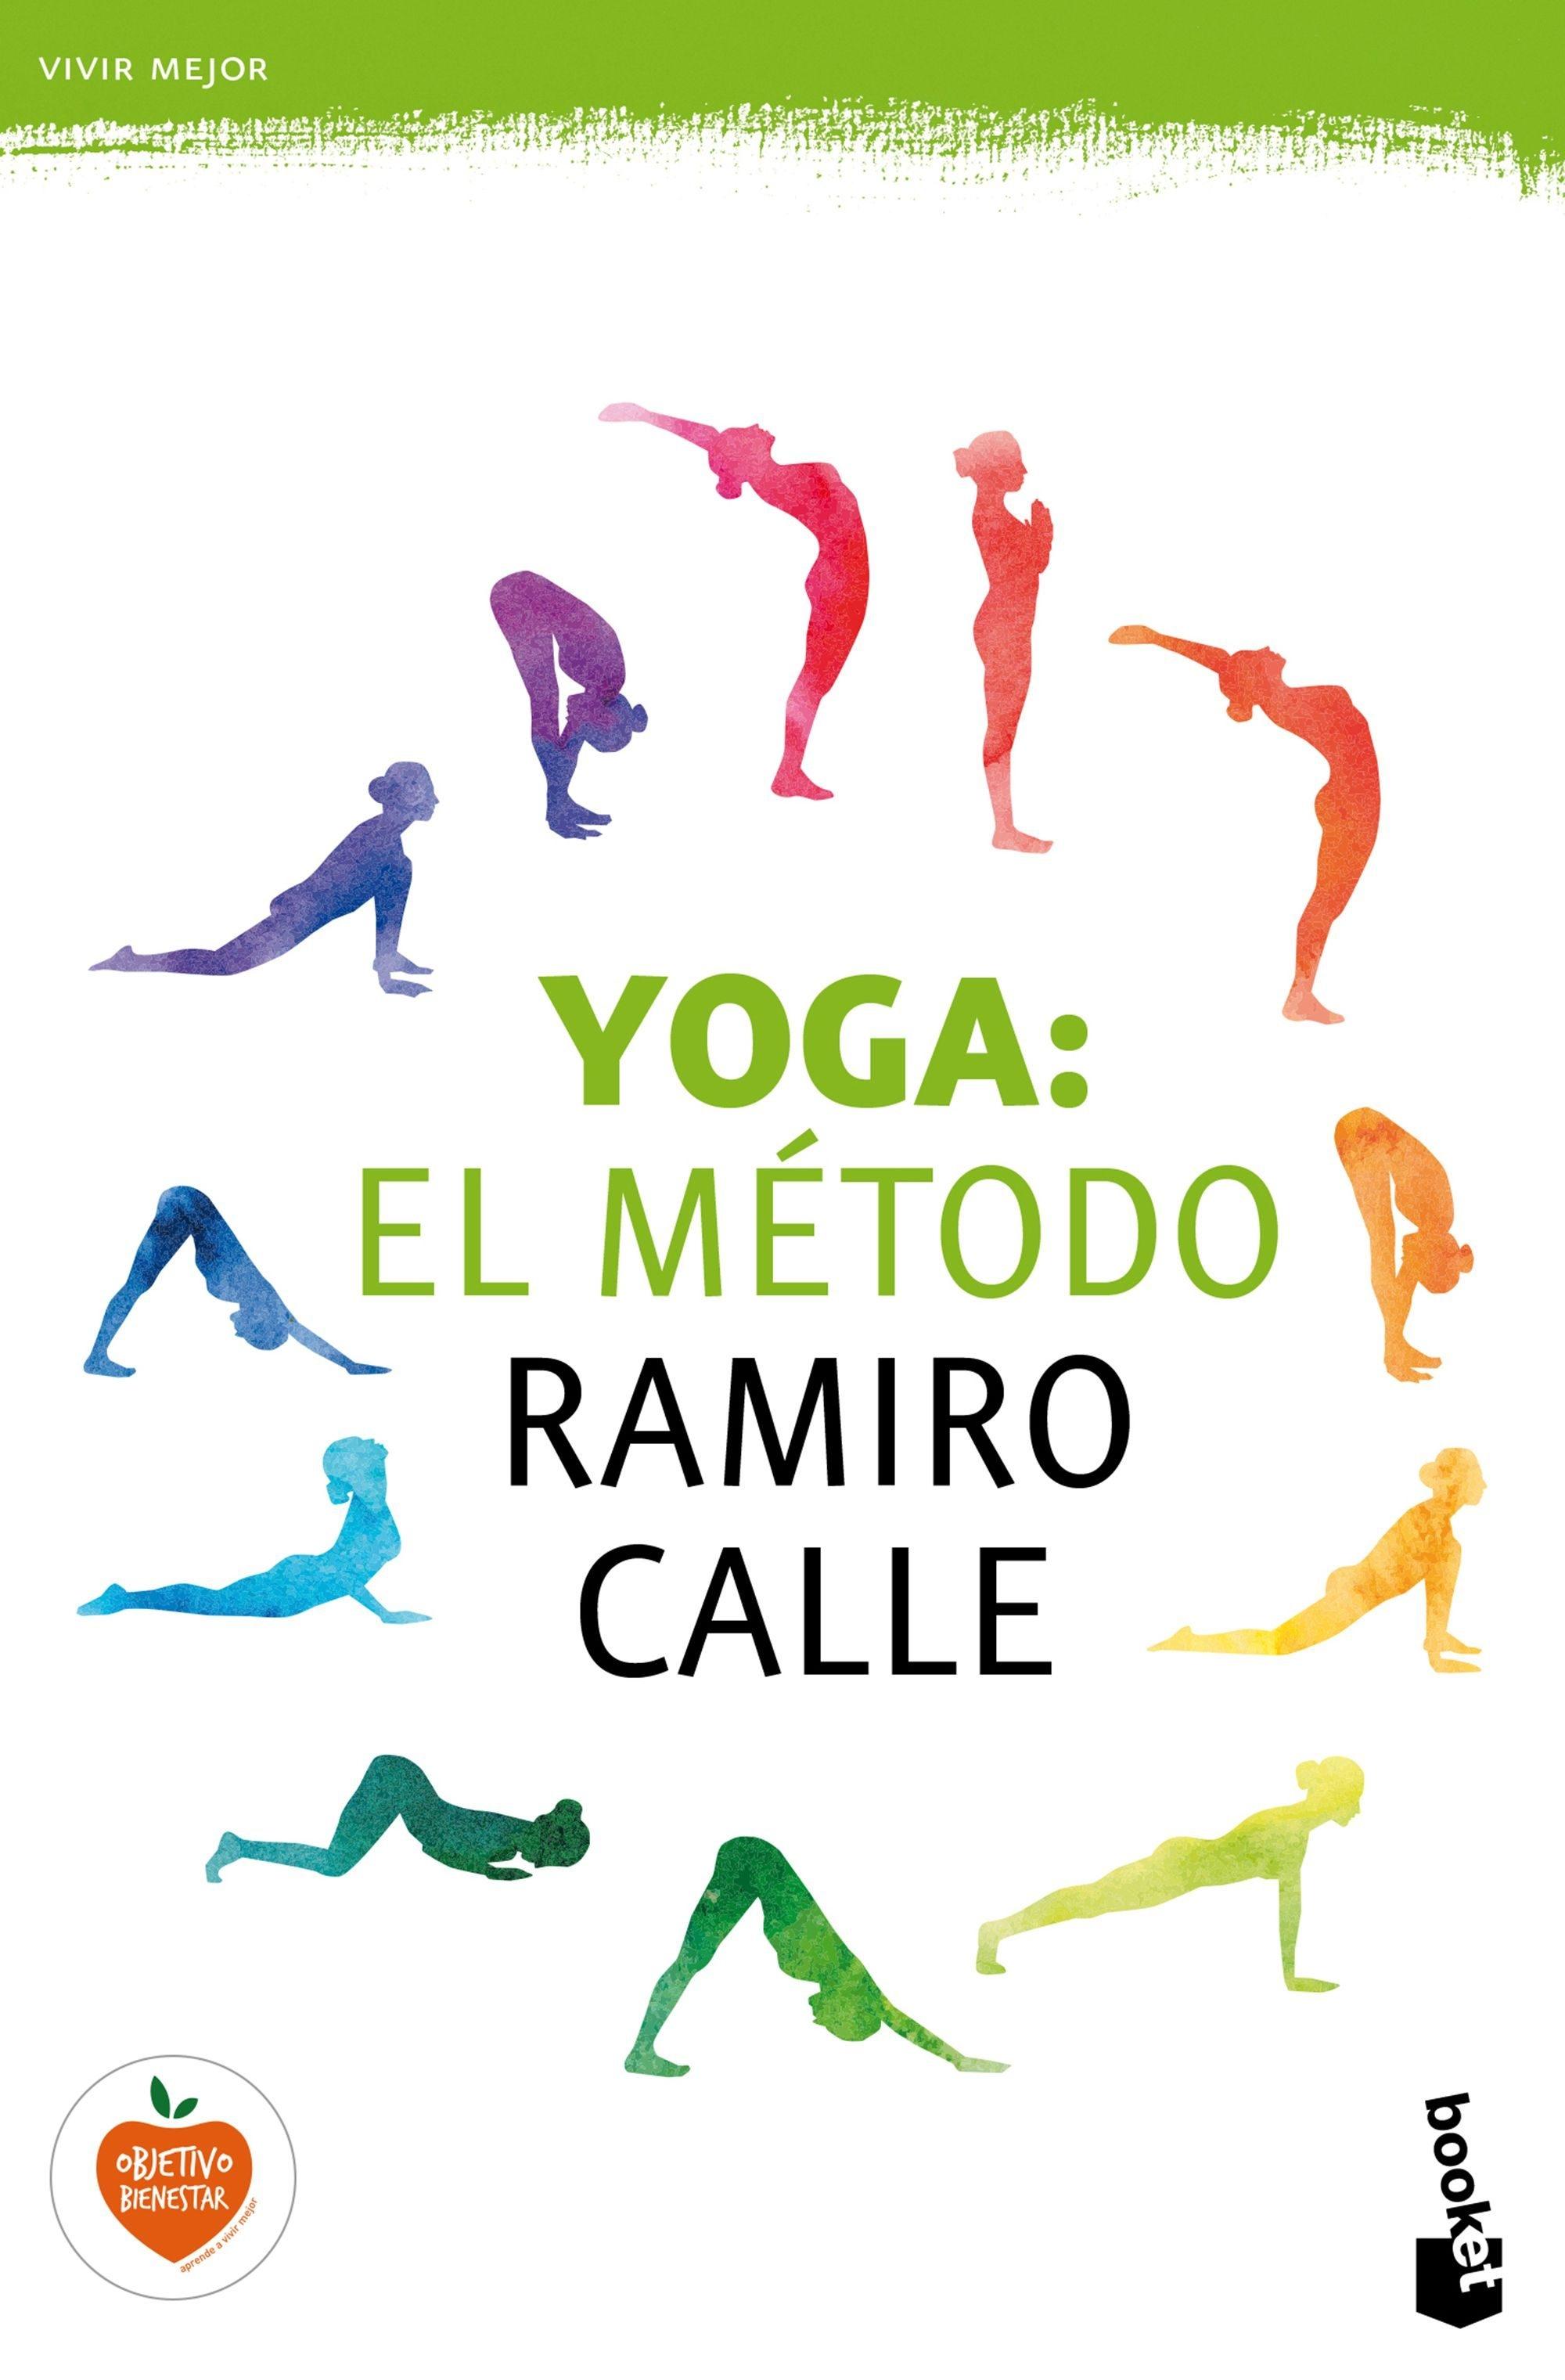 Yoga. El método Ramiro calle